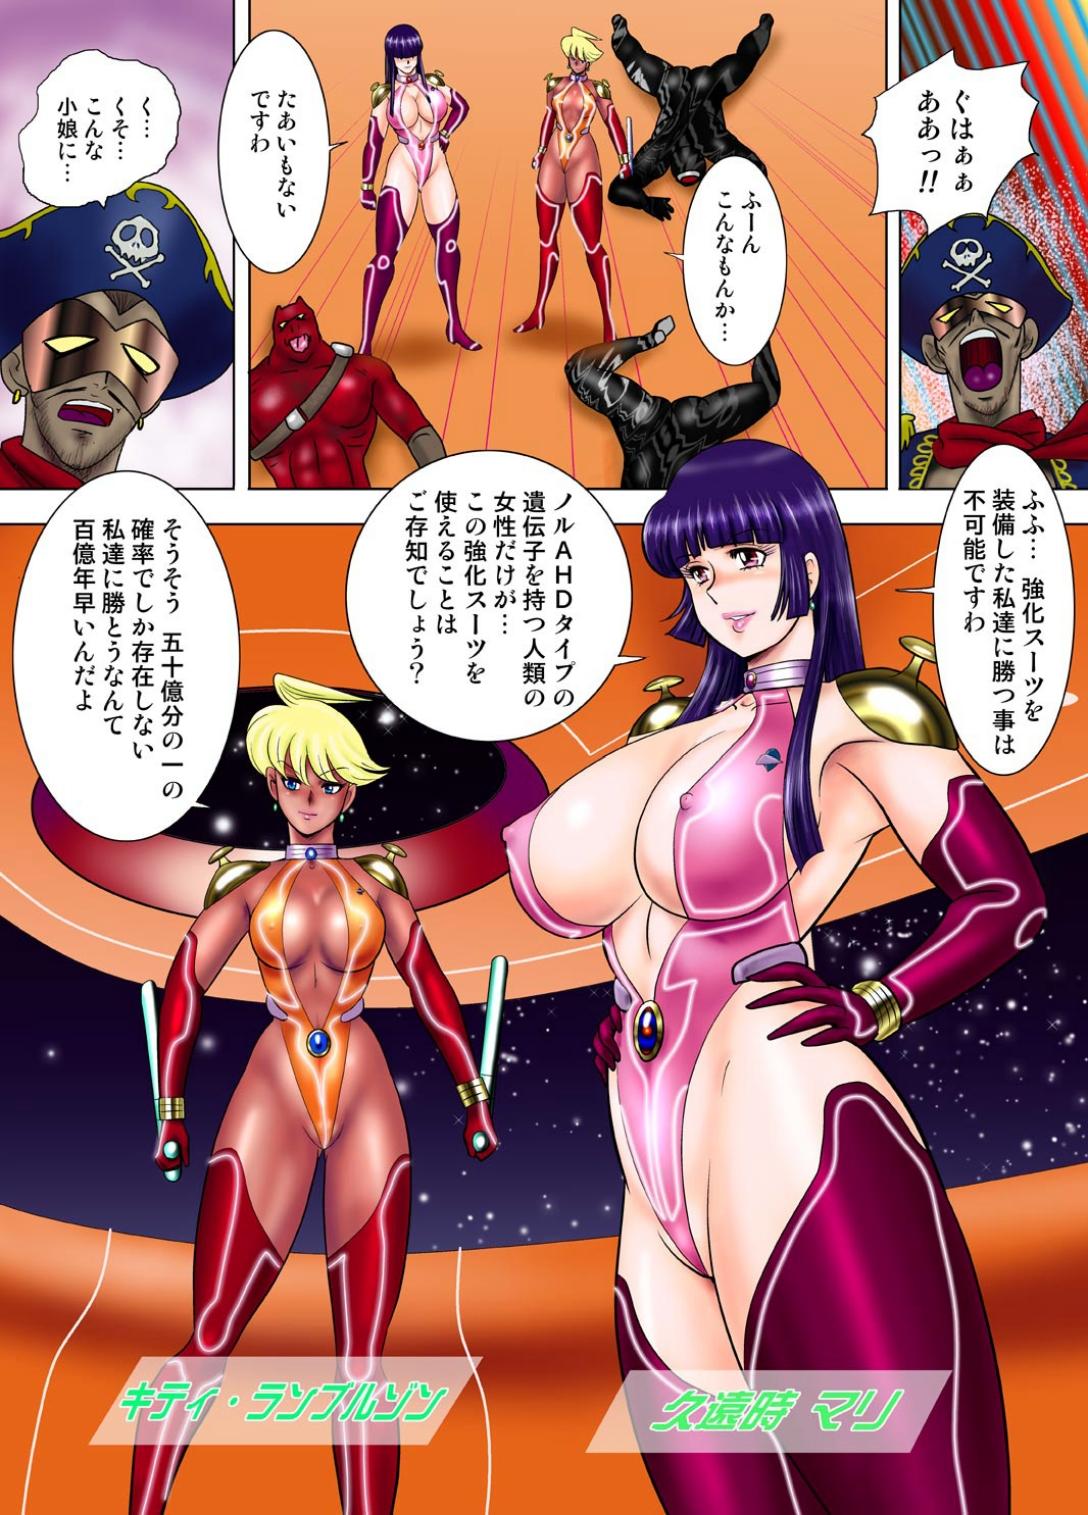 Pervert Ginga Tokusou Kitty & Mari Daiichiwa Jakka Suits no Wana - Dirty pair Onlyfans - Page 8